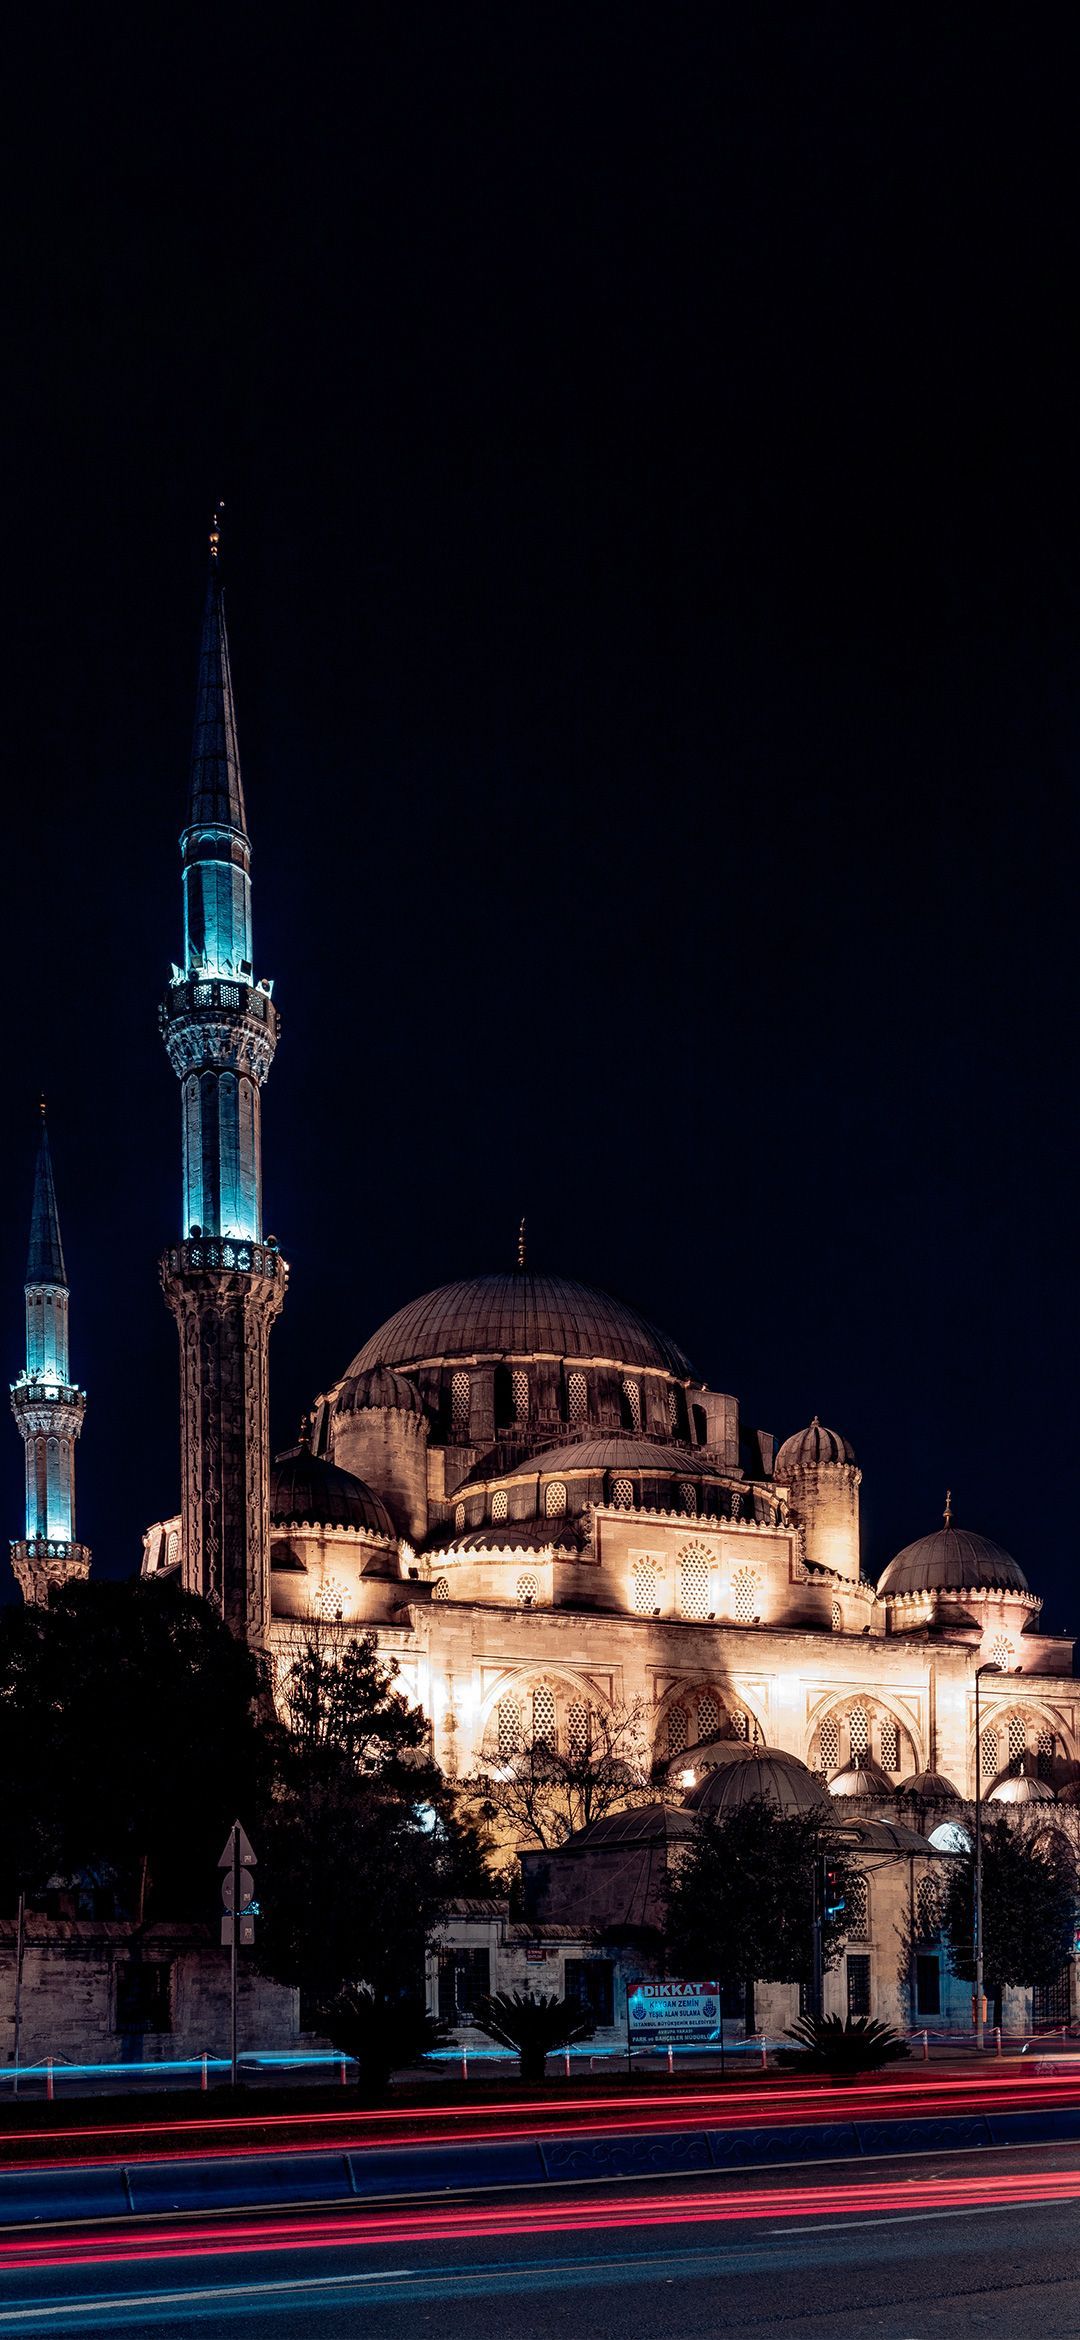 والپیپر منحصر به فرد از مسجد زیبا با چراغ های روشن 